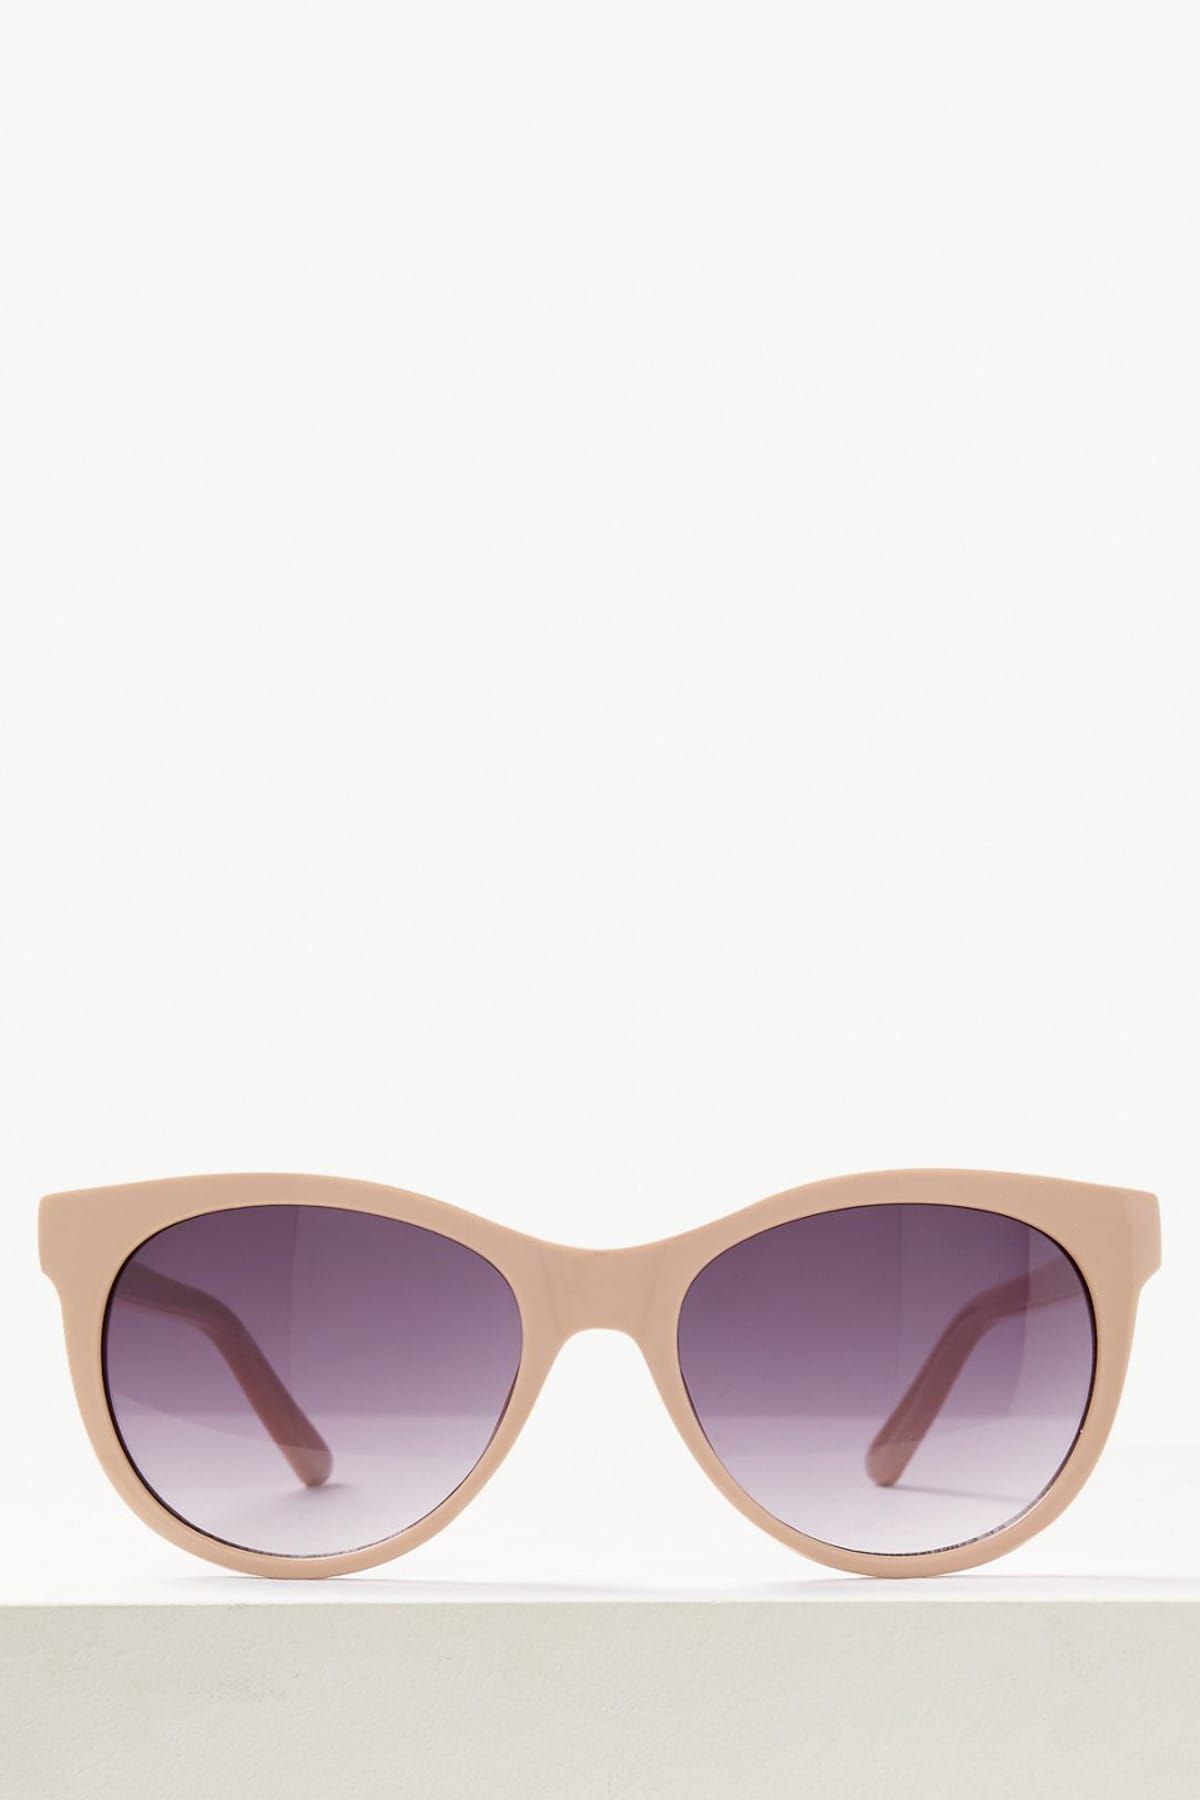 Marks & Spencer Kadın Bej Oval Güneş Gözlüğü T01005005S